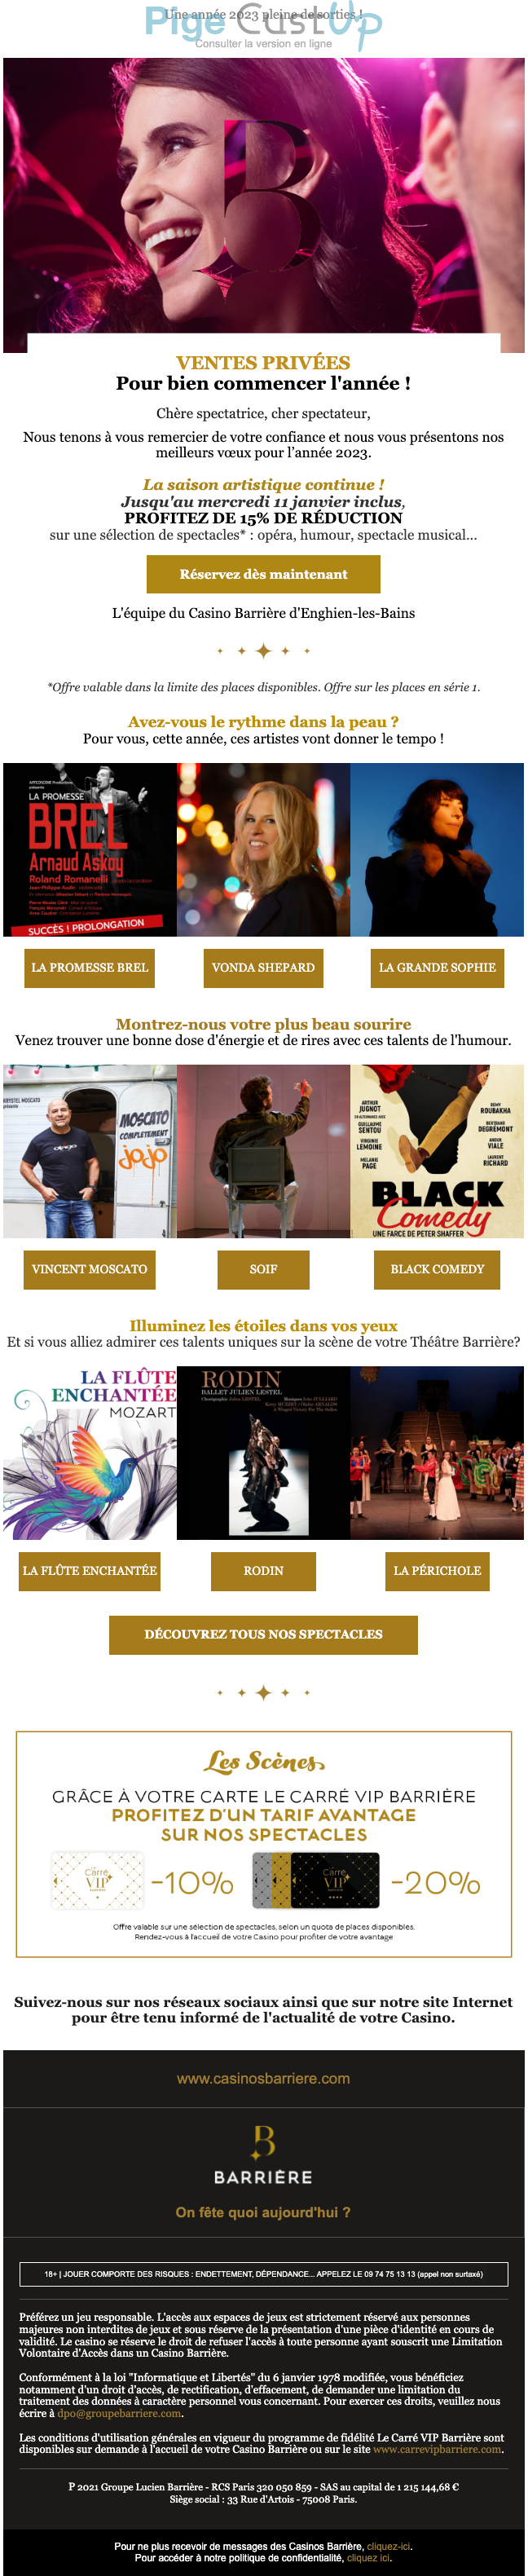 Exemple de Type de media  e-mailing - Théâtre du Casino Barrière Enghien - Marketing relationnel - Calendaire (Noël, St valentin, Vœux, …) - Marketing Acquisition - Ventes privées